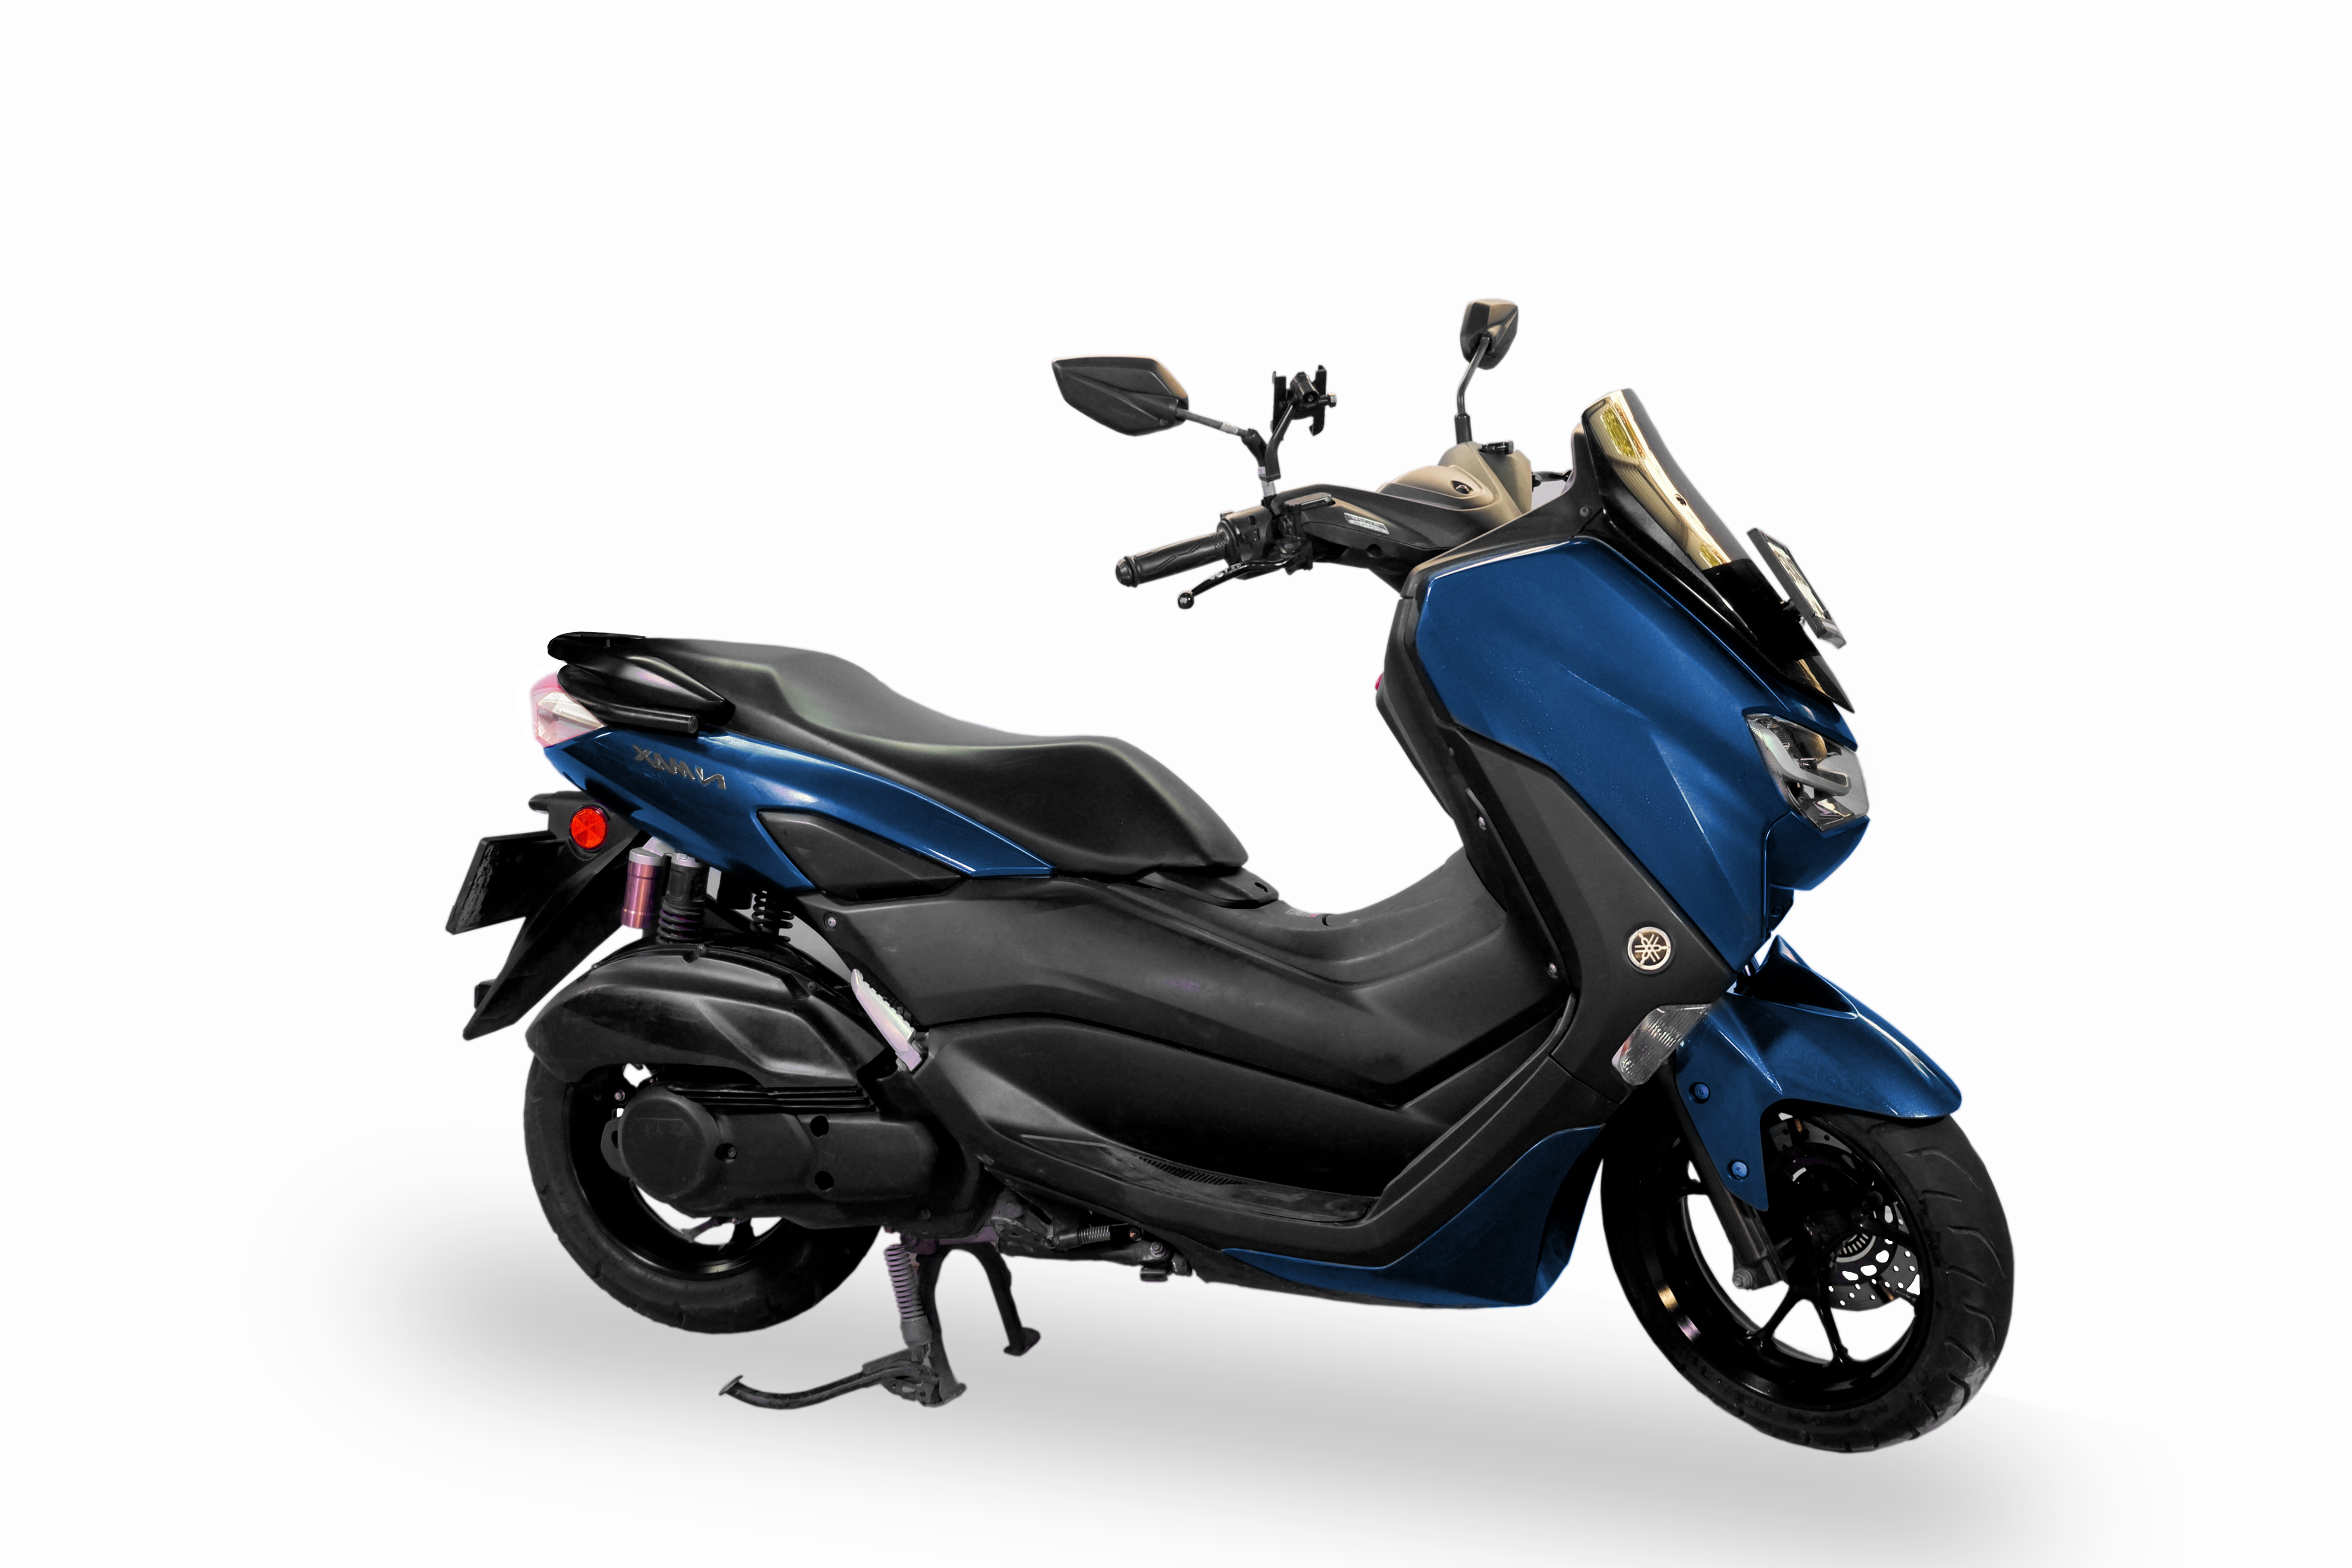 Mieten Sie einen Yamaha All New Nmax (blau)